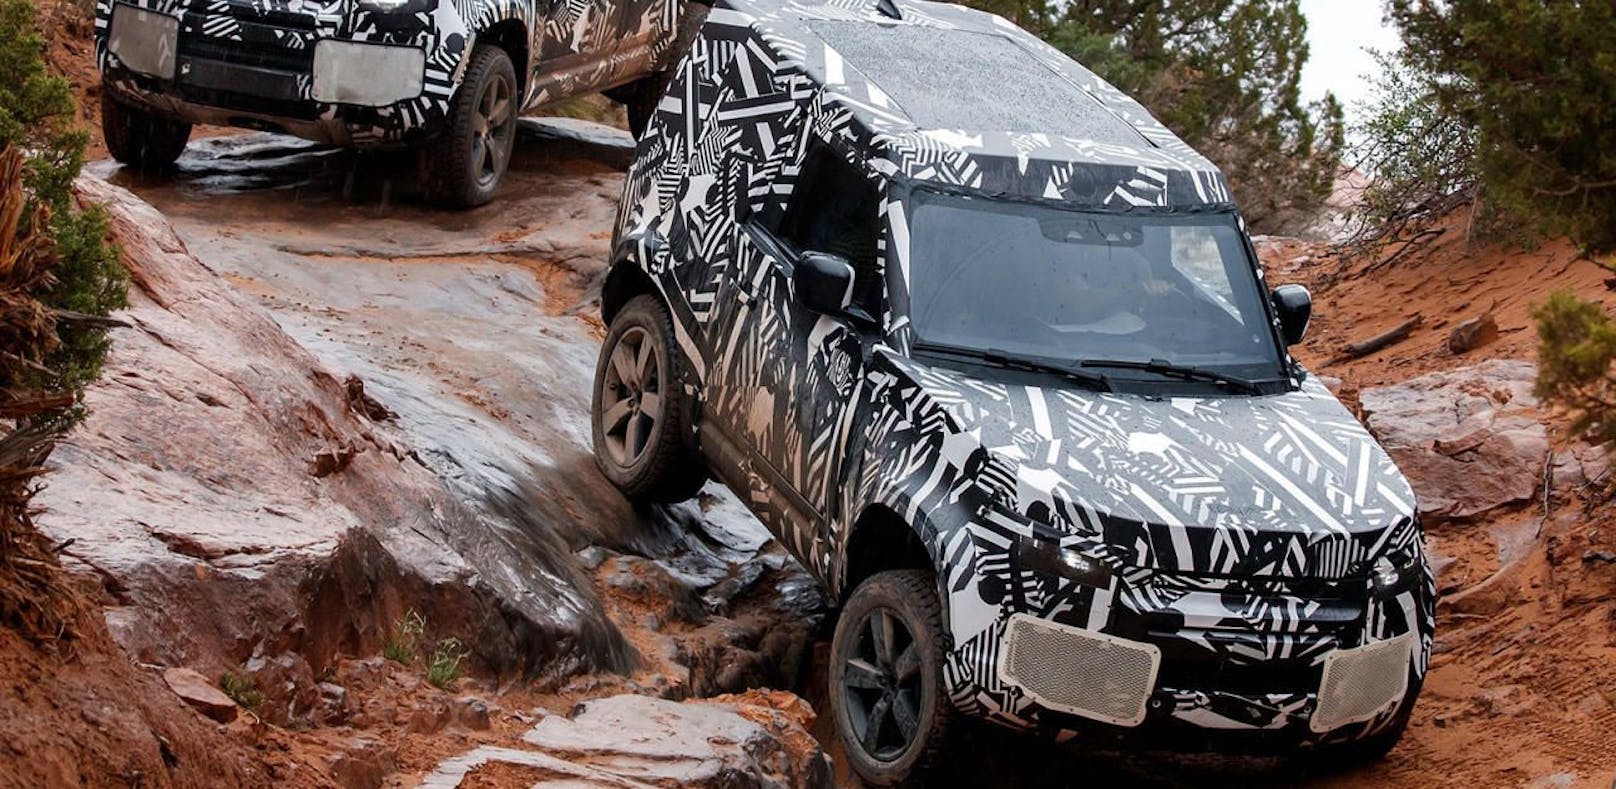 Land Rover Defender absolviert letzte Tests